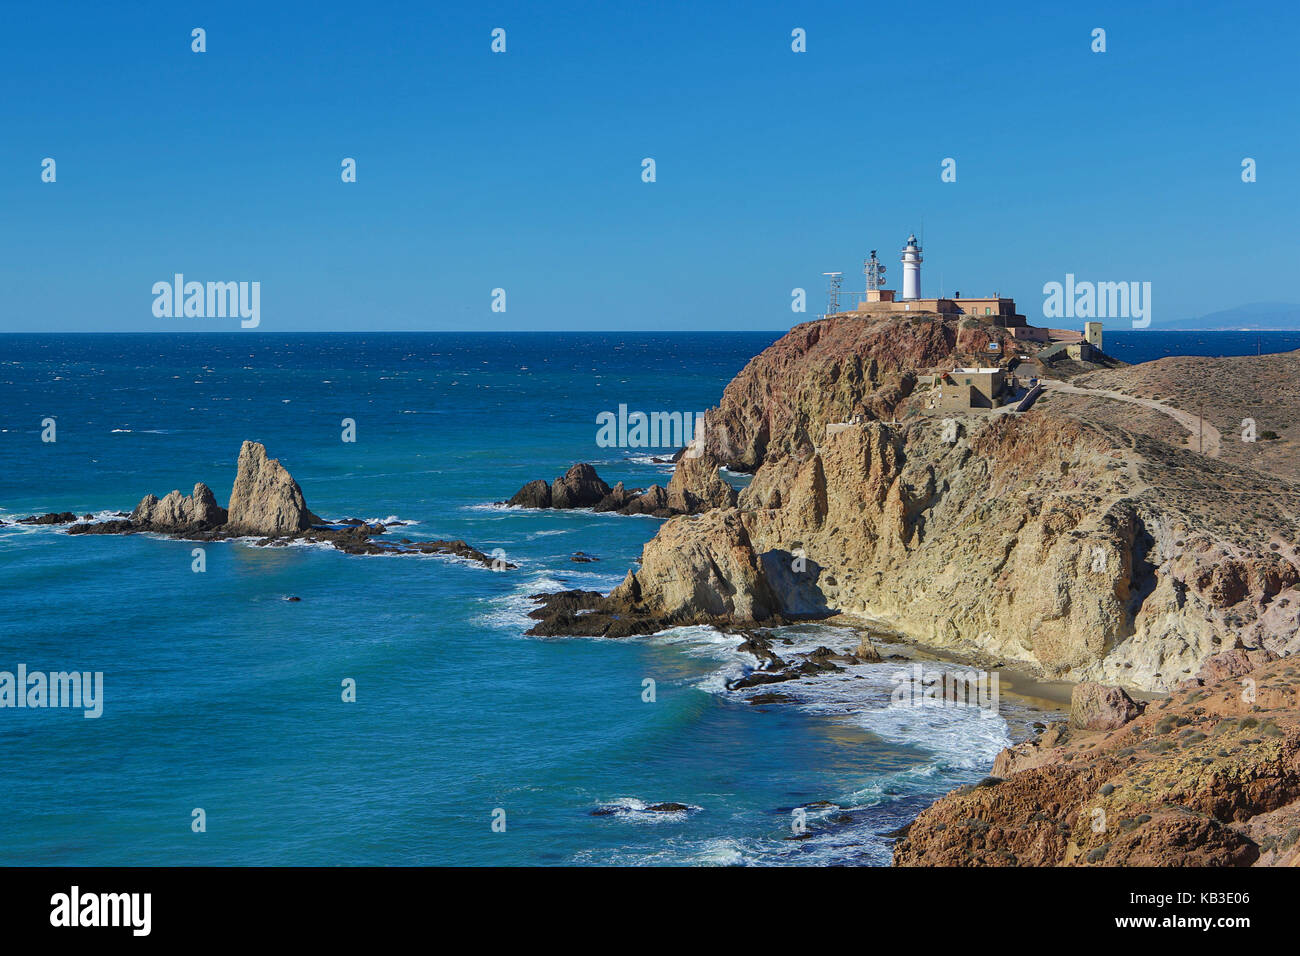 Spain, Andalusia, province Almeria, rock coast, lighthouse of Gata Stock Photo